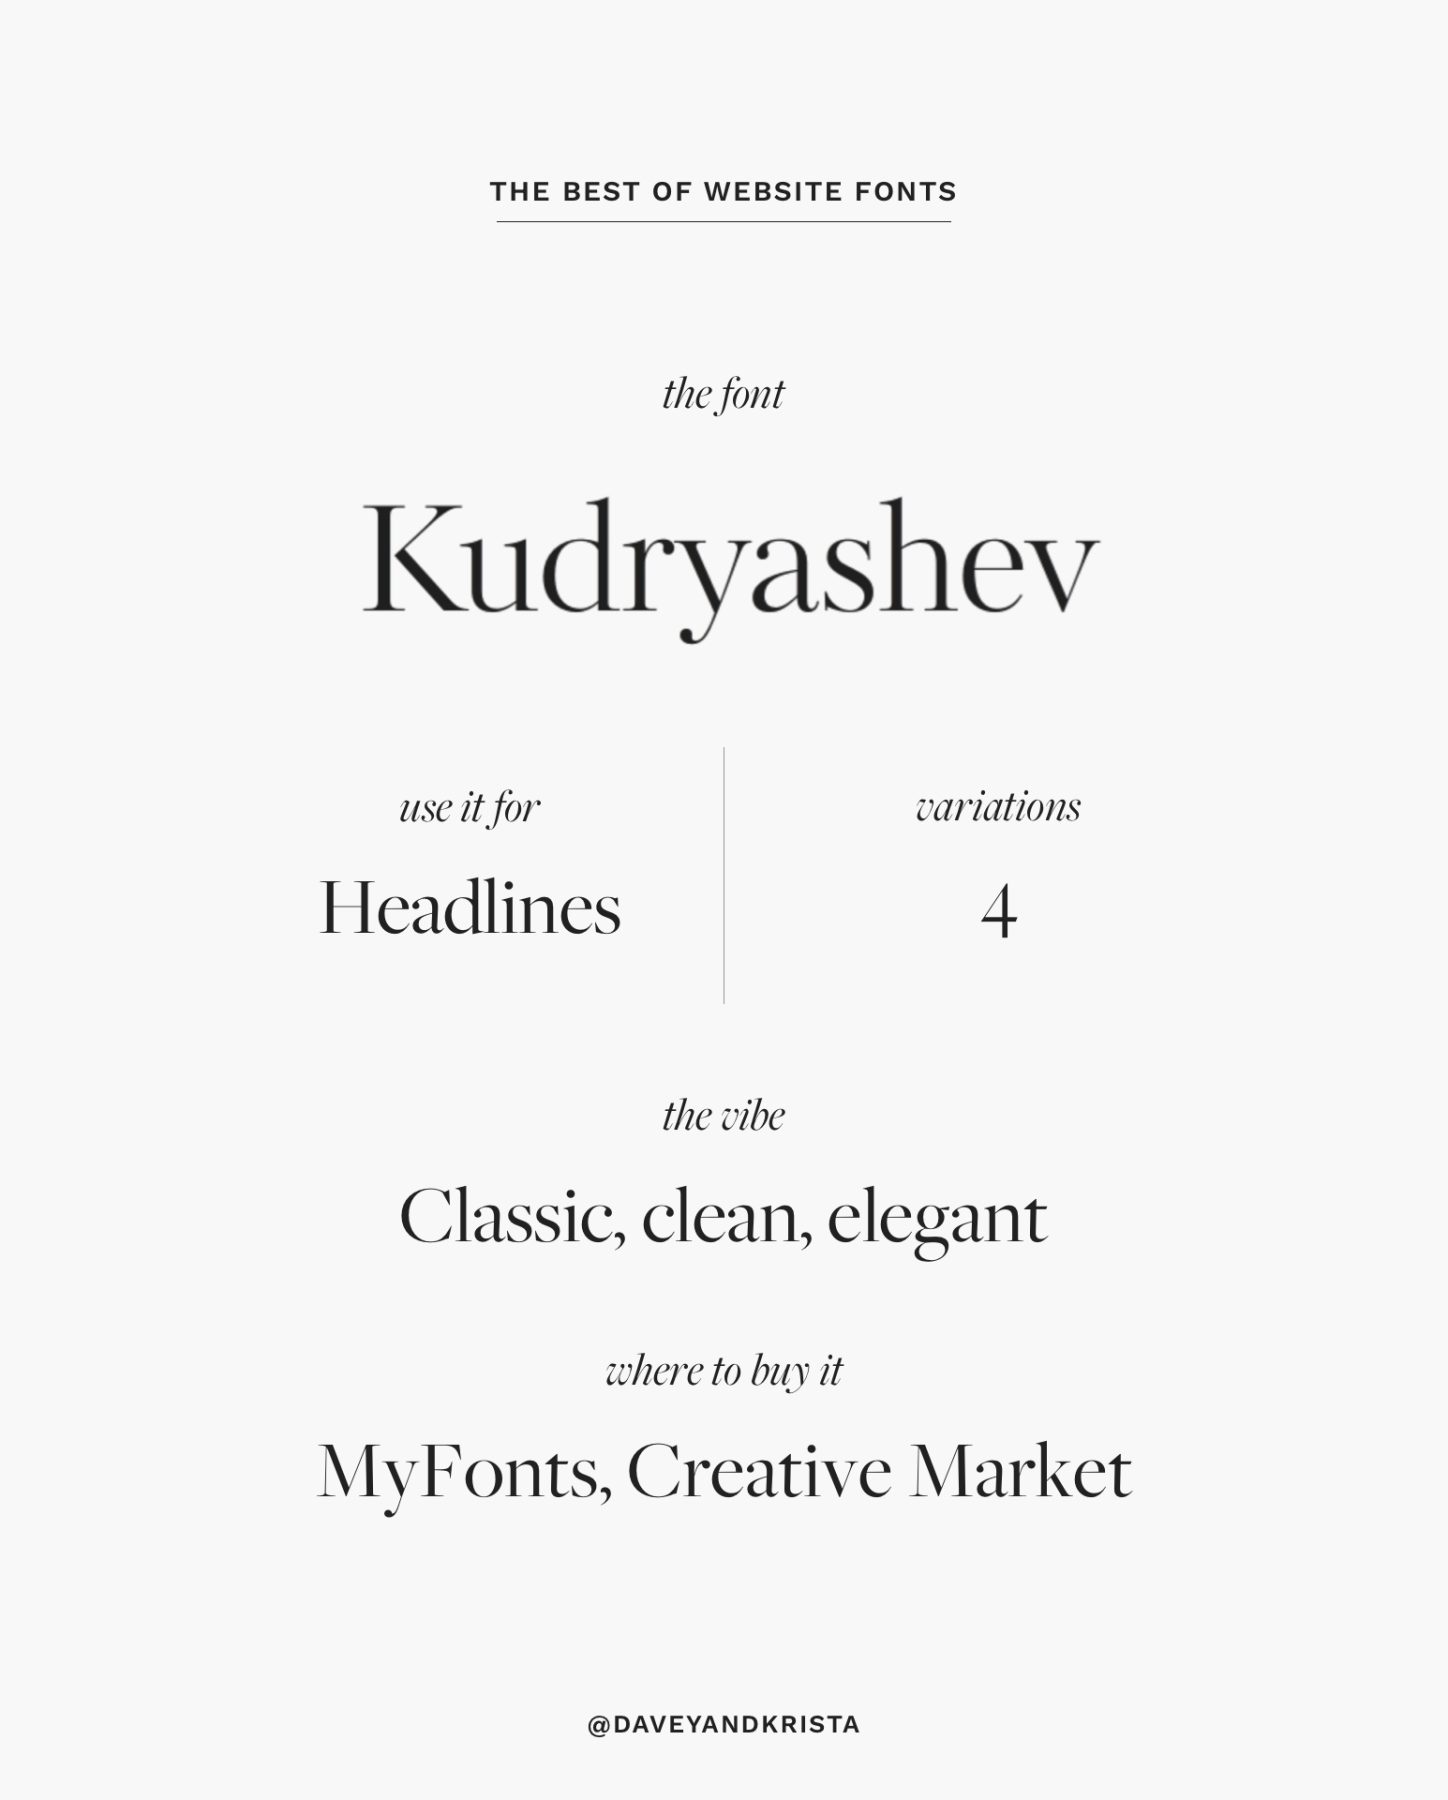 Kudryashev - a classic, elegant serif font for website headlines | The Best Fonts for Websites